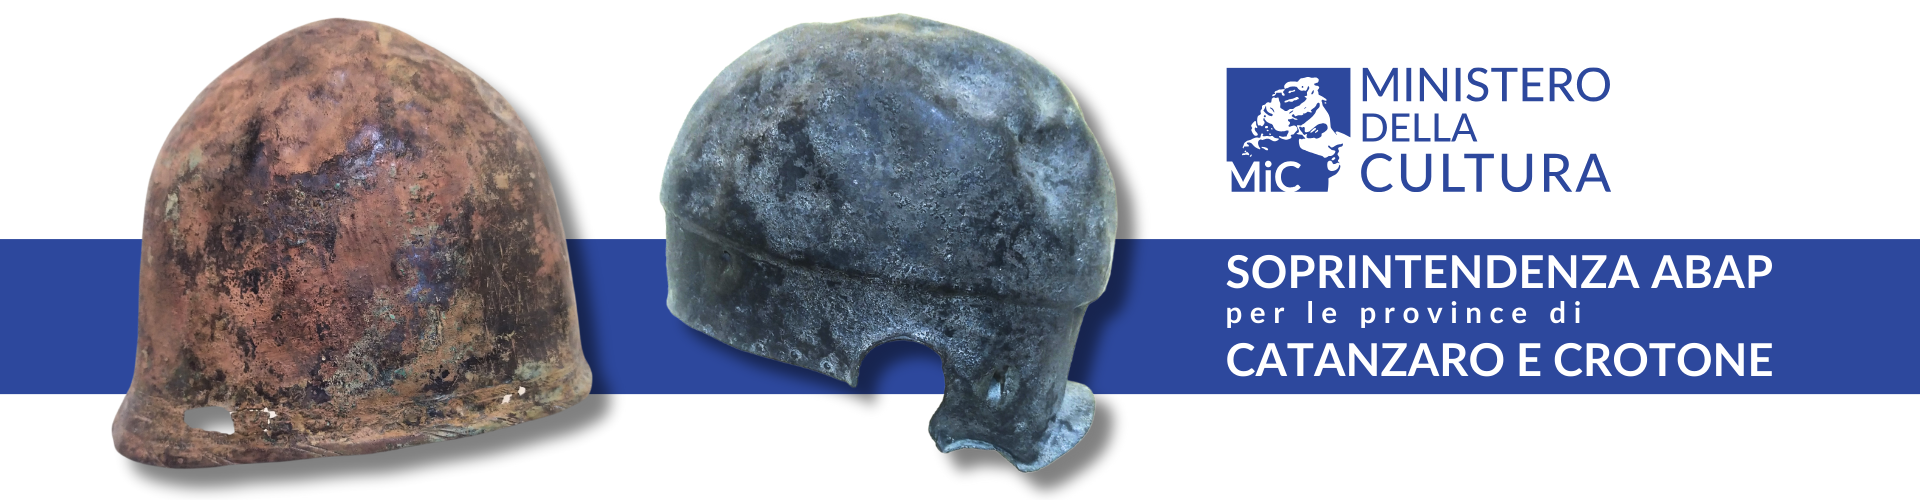 Elmi brettii del 4°-3° secolo a.C. - Tiriolo (CZ)